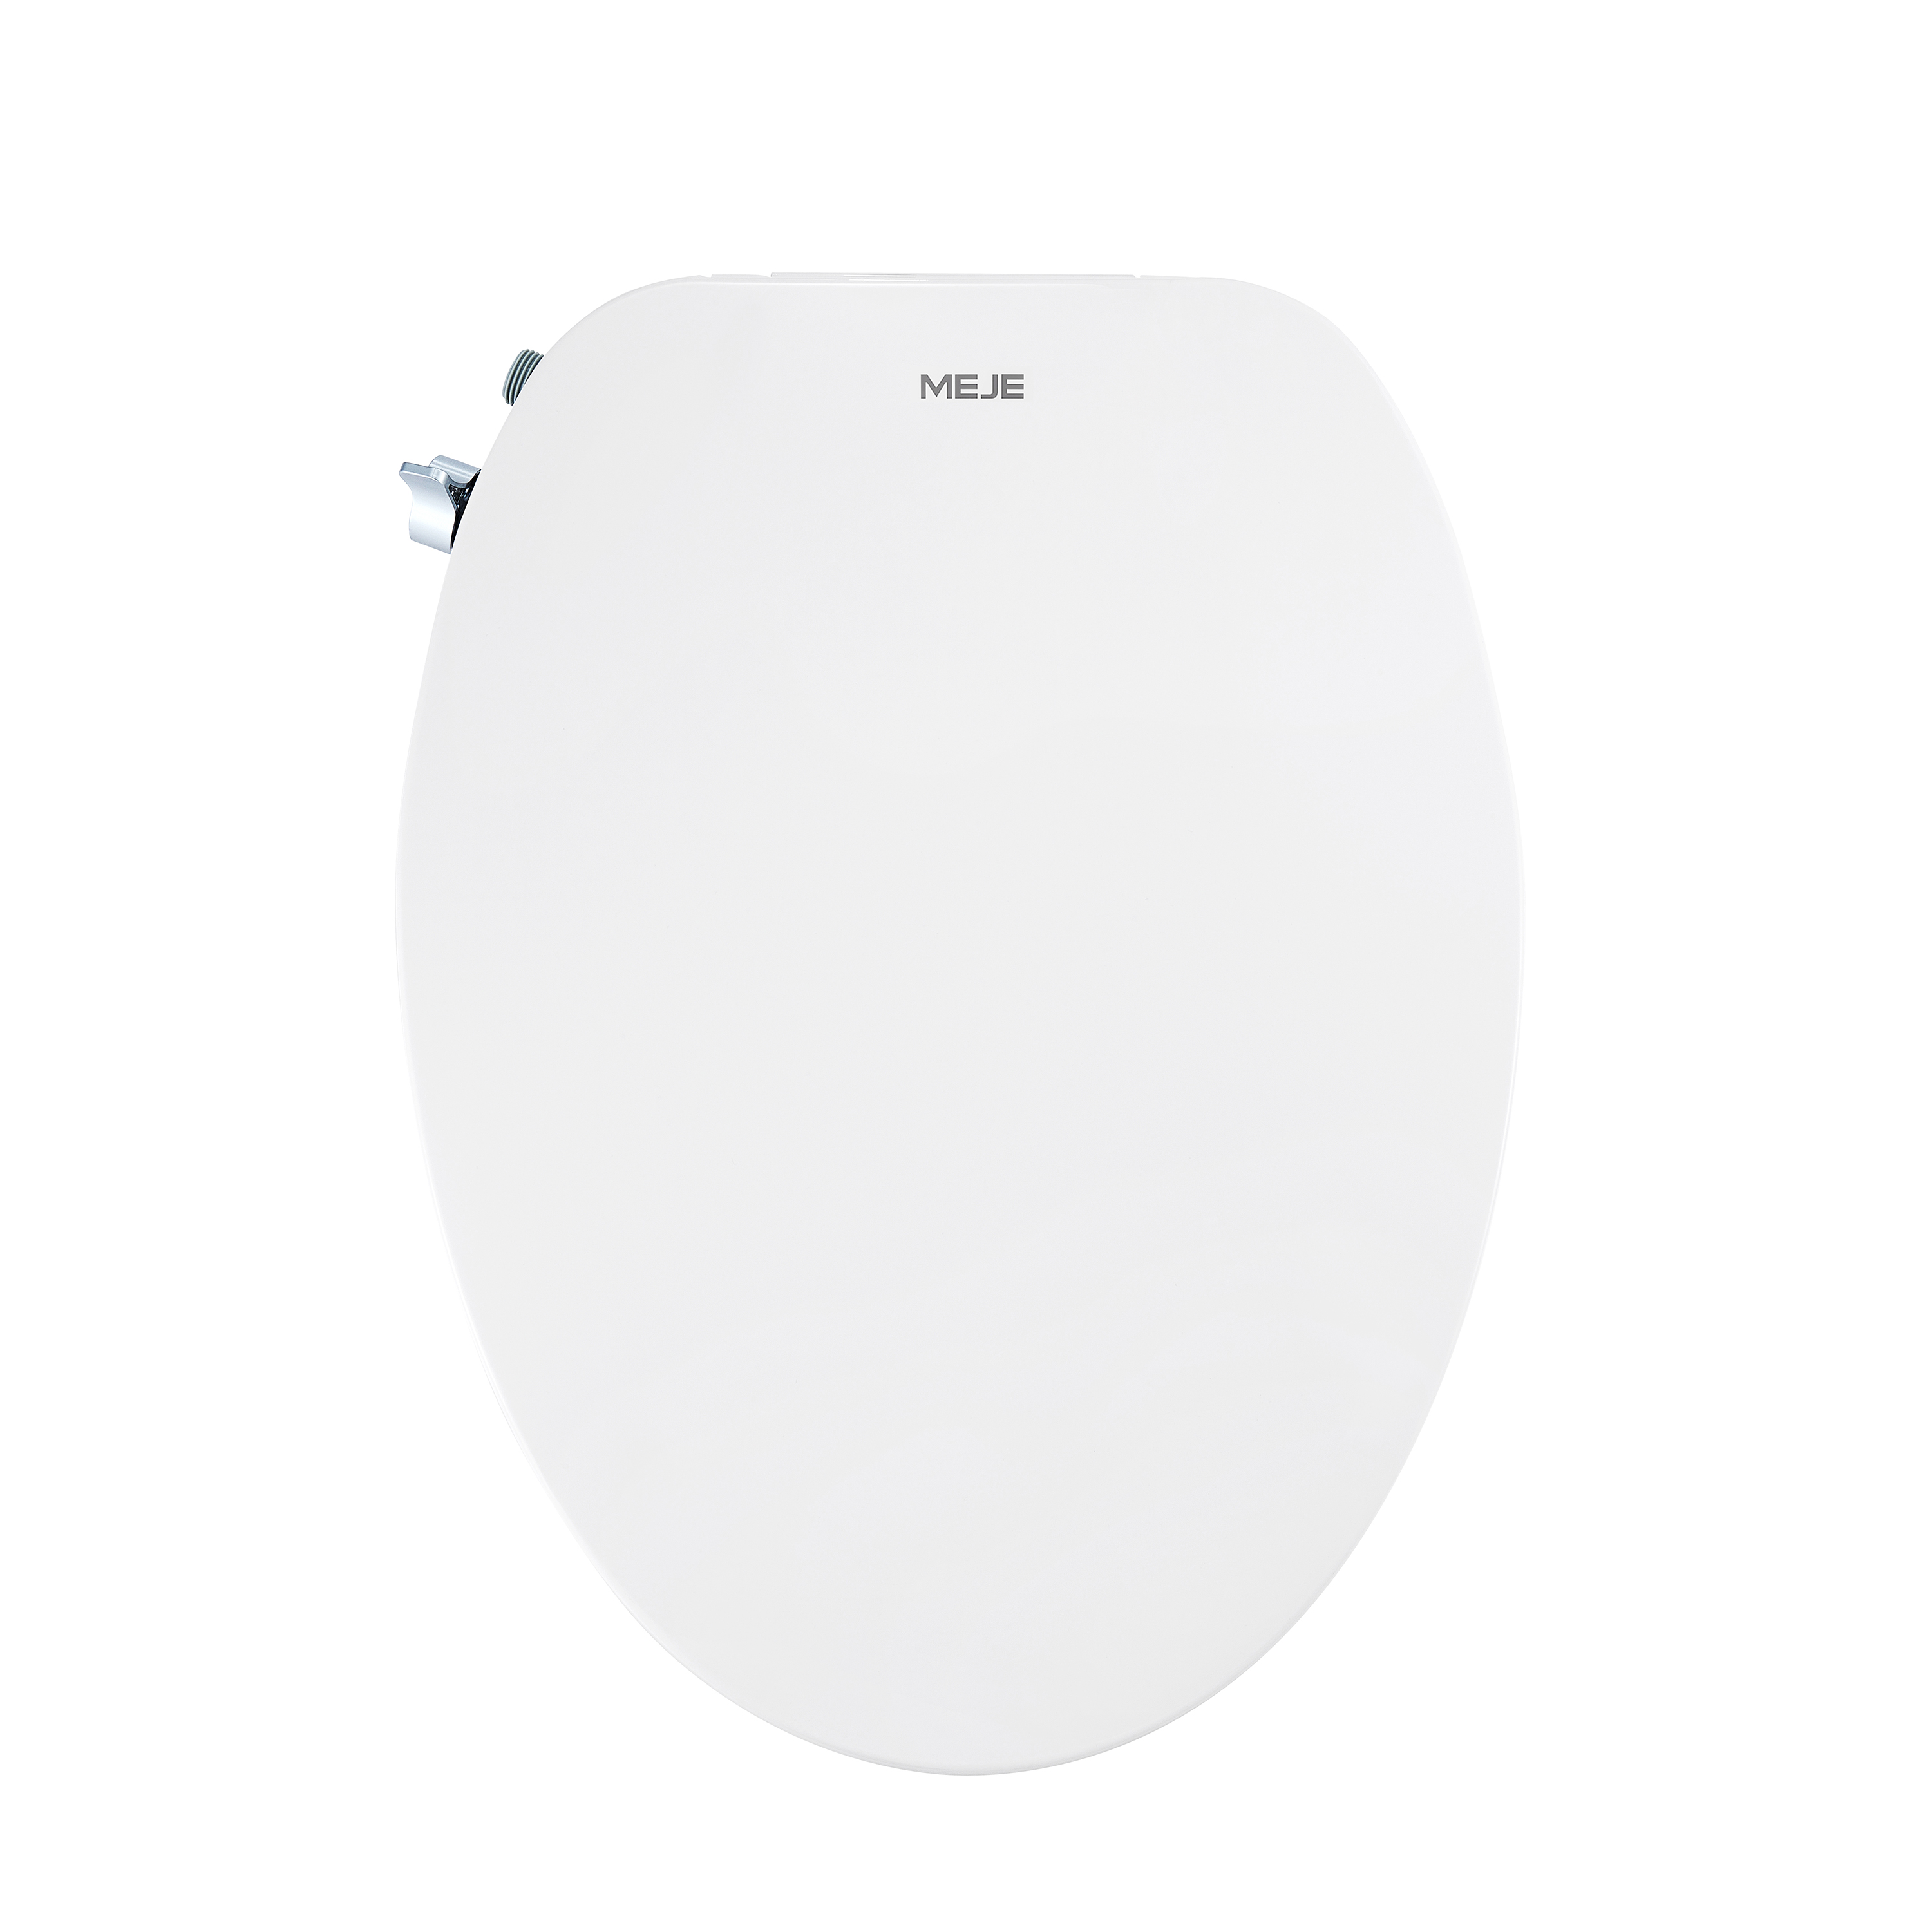 MEJE #VB-L Sedile WC per bidet non elettrico, adatto a WC allungati, bianco - Doppio ugello con spruzzatori regolabili, facile installazione...